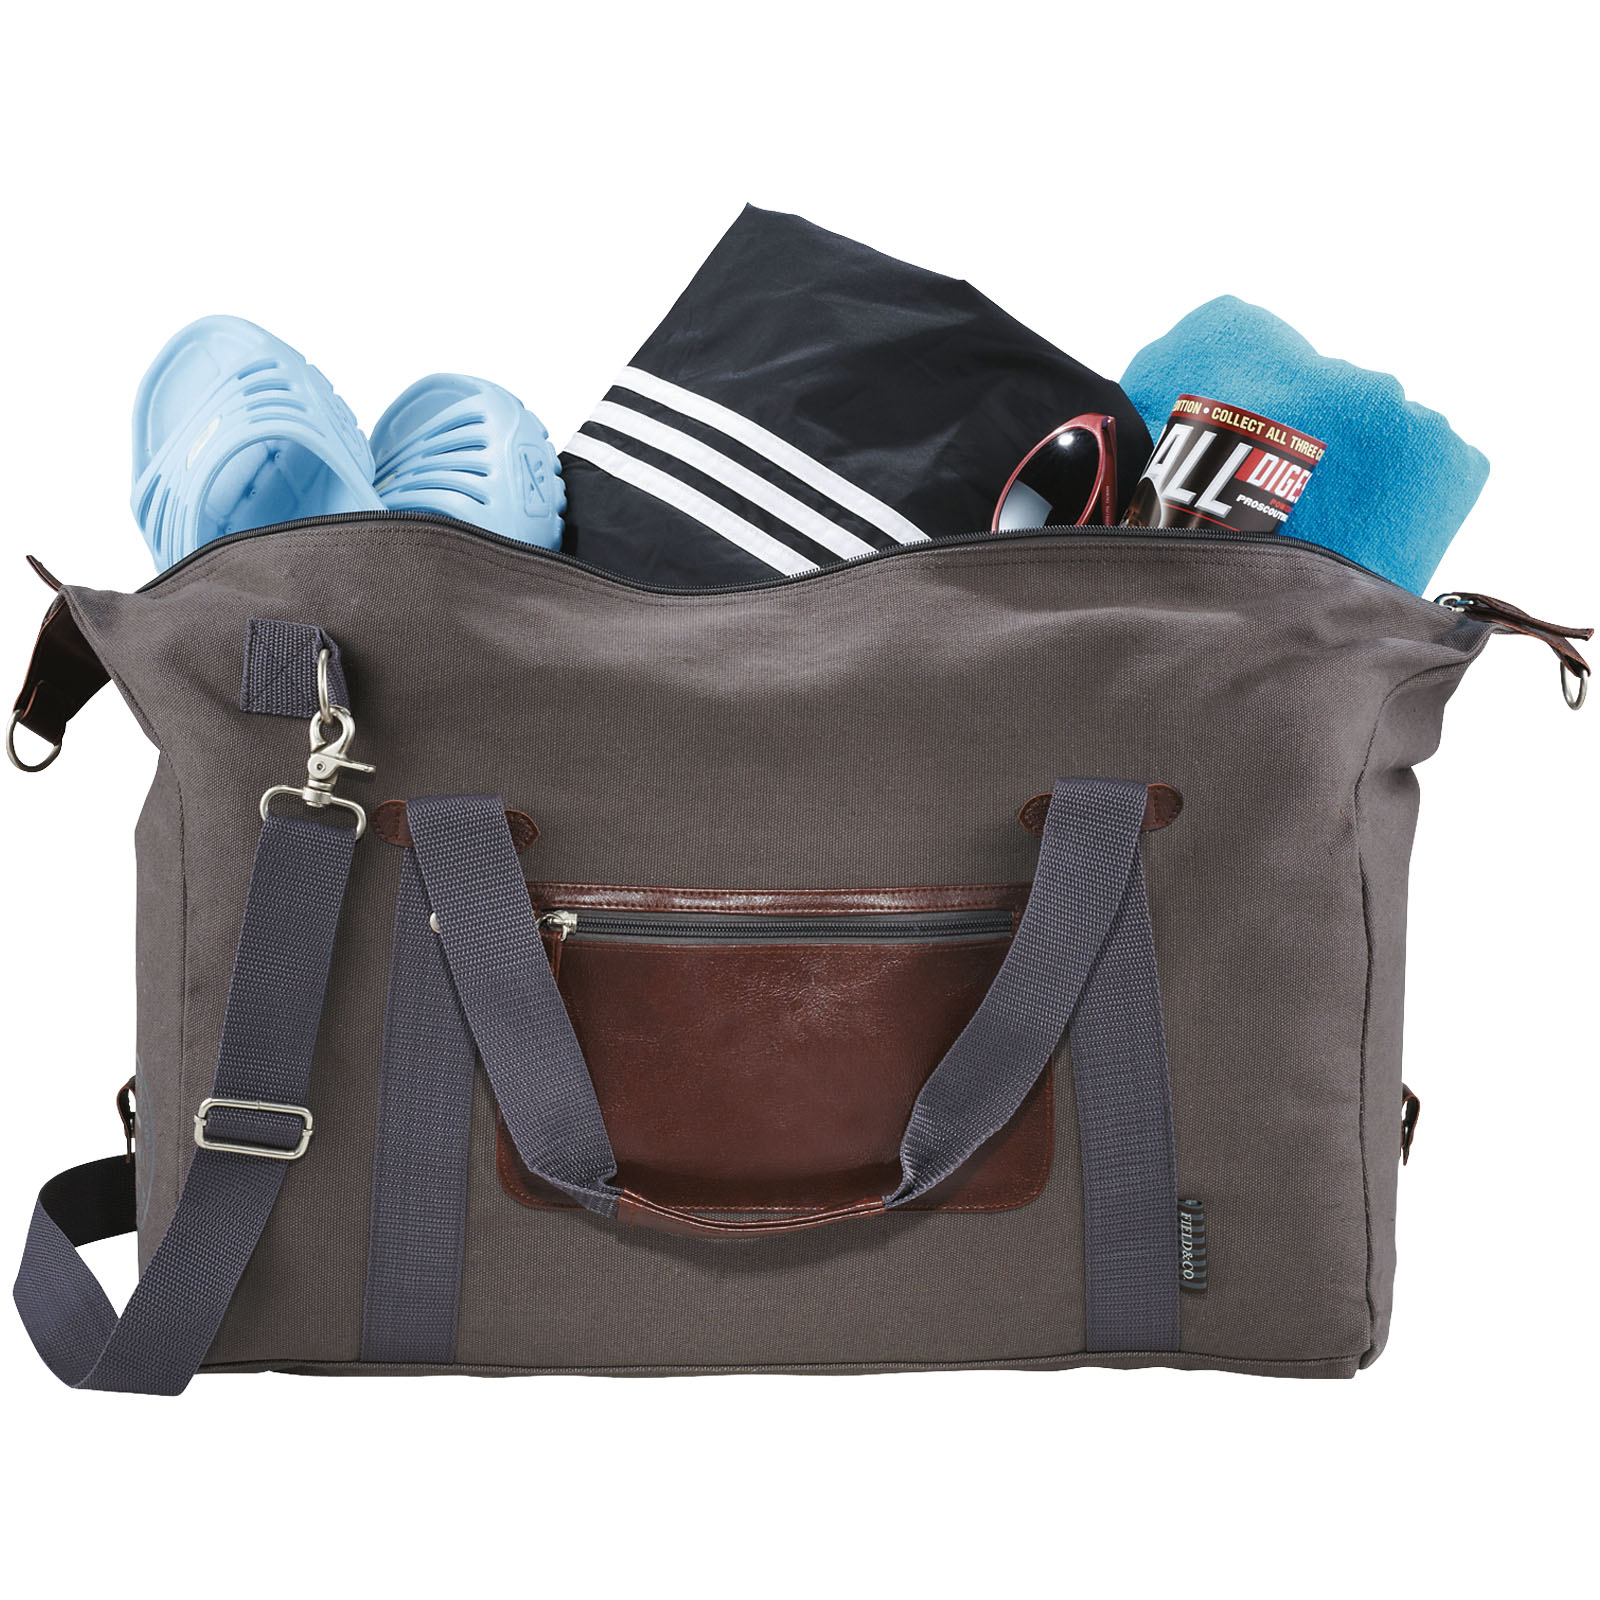 Advertising Travel bags - Classic duffel bag 37L - 2